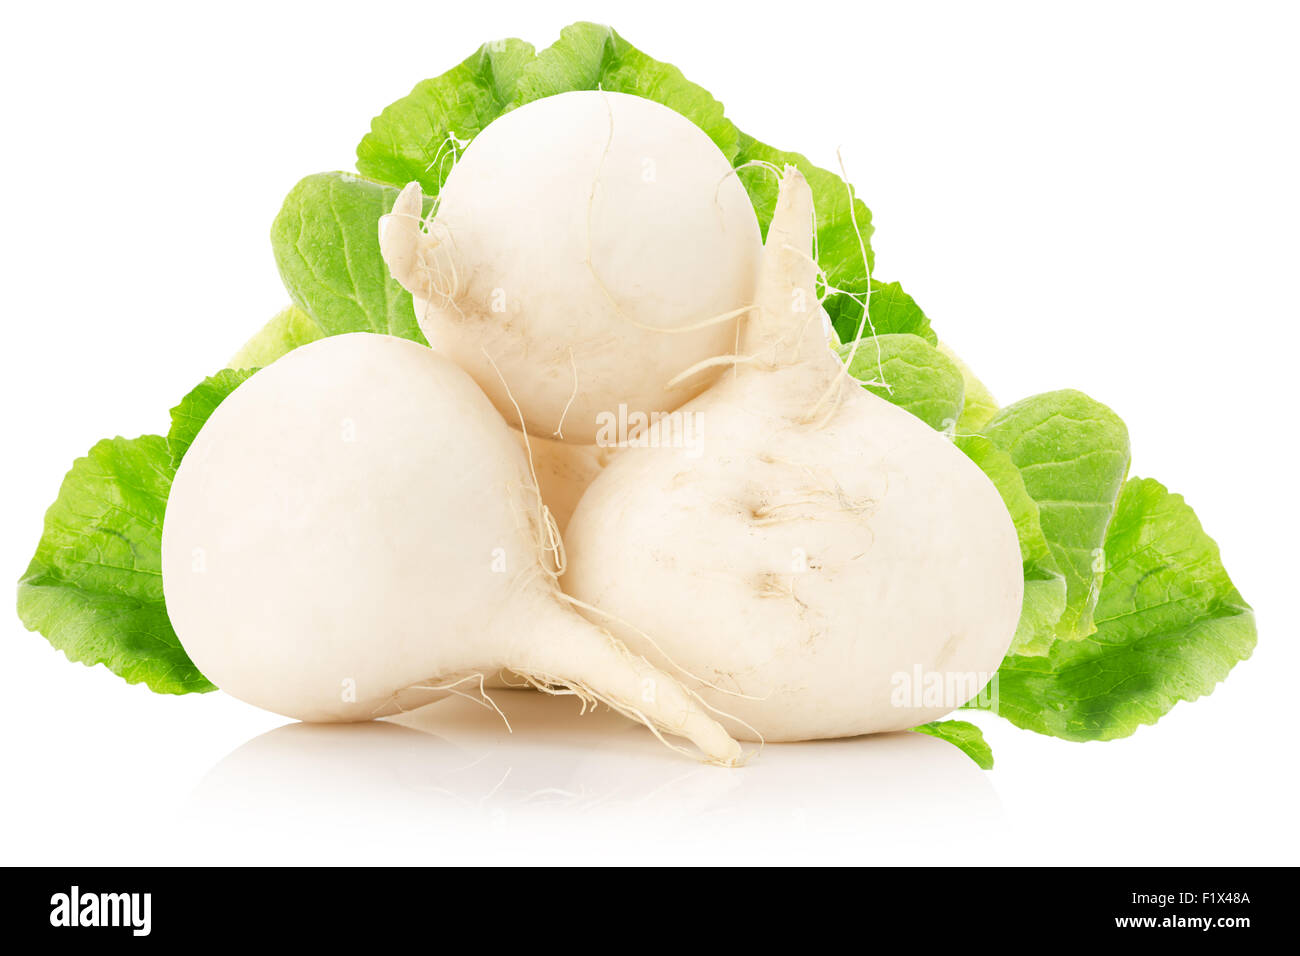 white radish isolated on the white background. Stock Photo